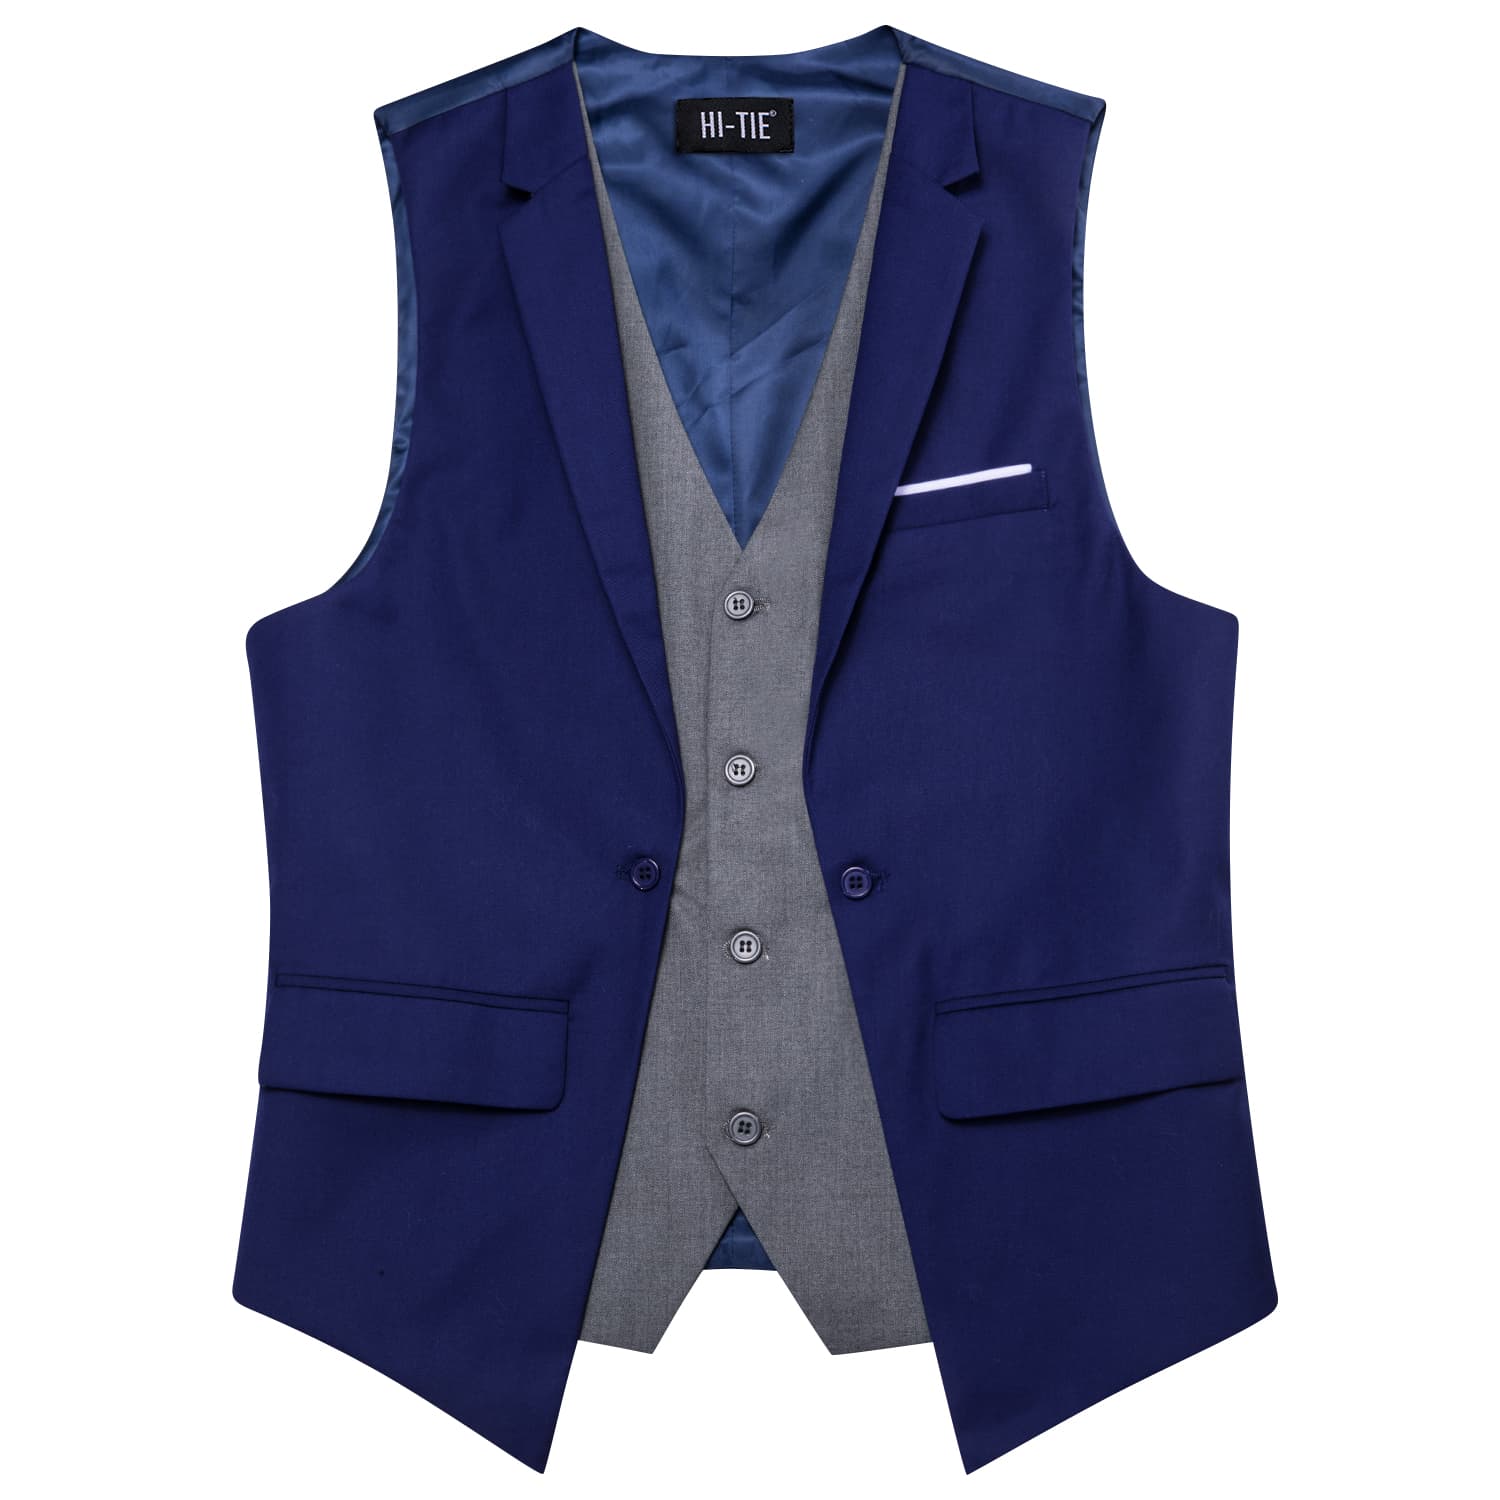 Hi-Tie Suit Vest Layered Waistcoat Navy Blue Gray Vests for Wedding